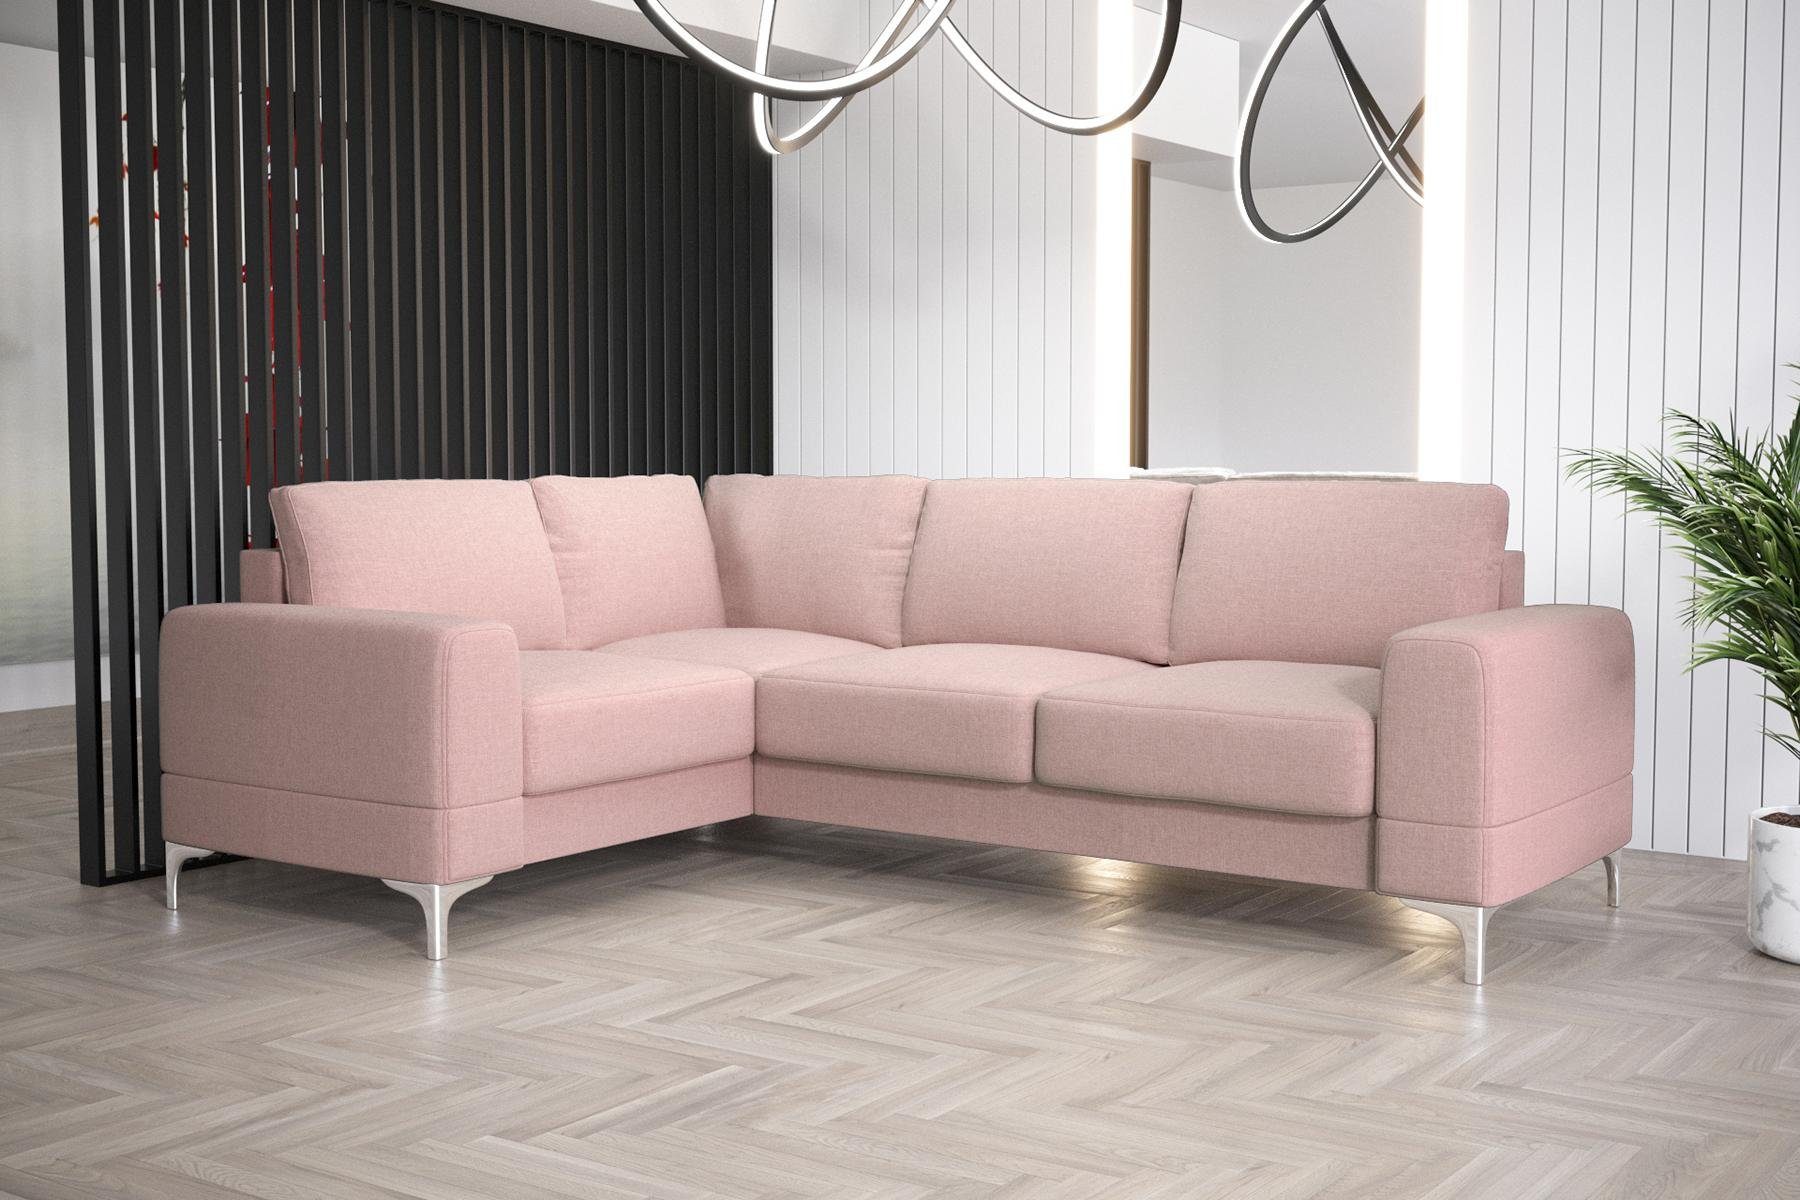 Luxus JVmoebel Europe Ecksofa in Sofa L-Form Ecksofa Rosa Couch, Wohnzimmer Modern Möbel Made